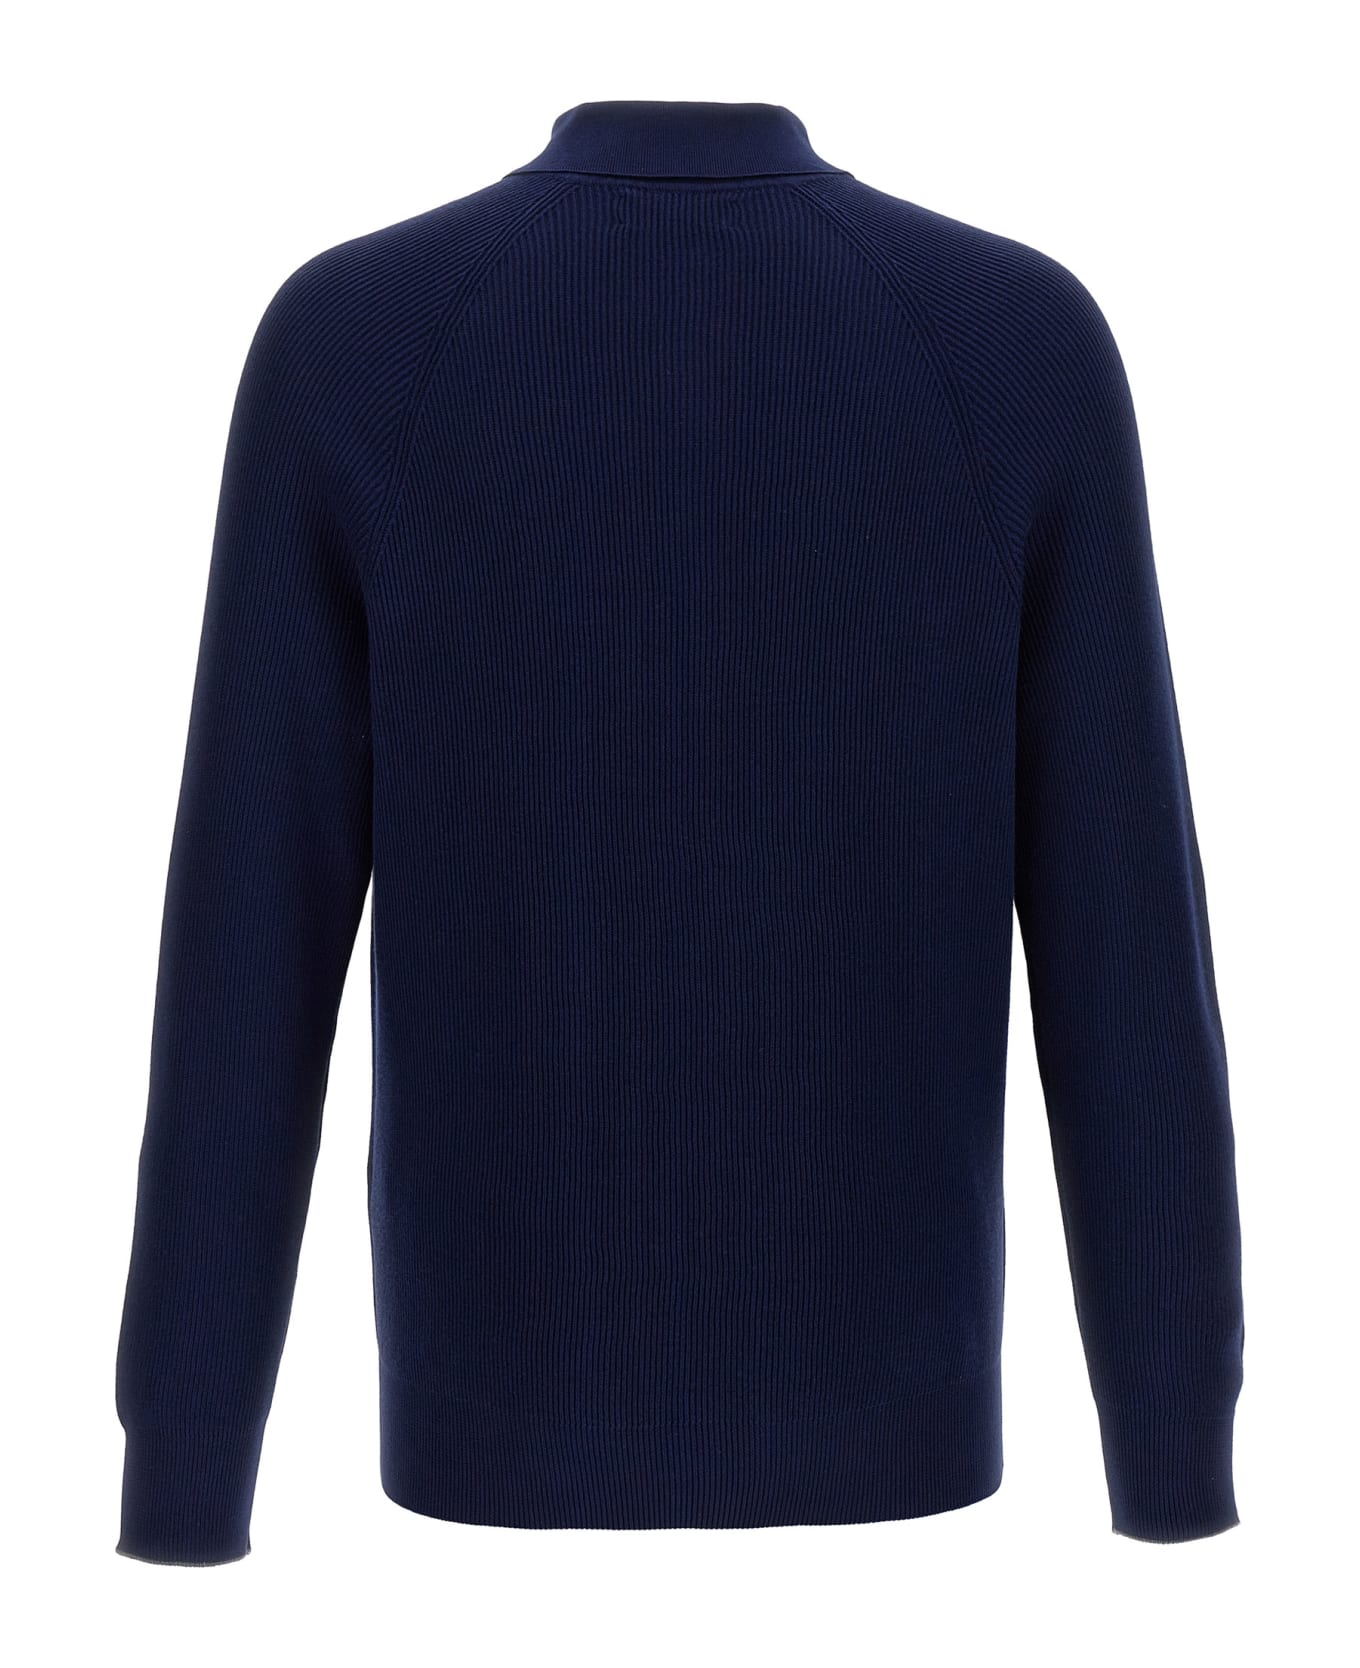 Brunello Cucinelli Polo Sweater - Blue